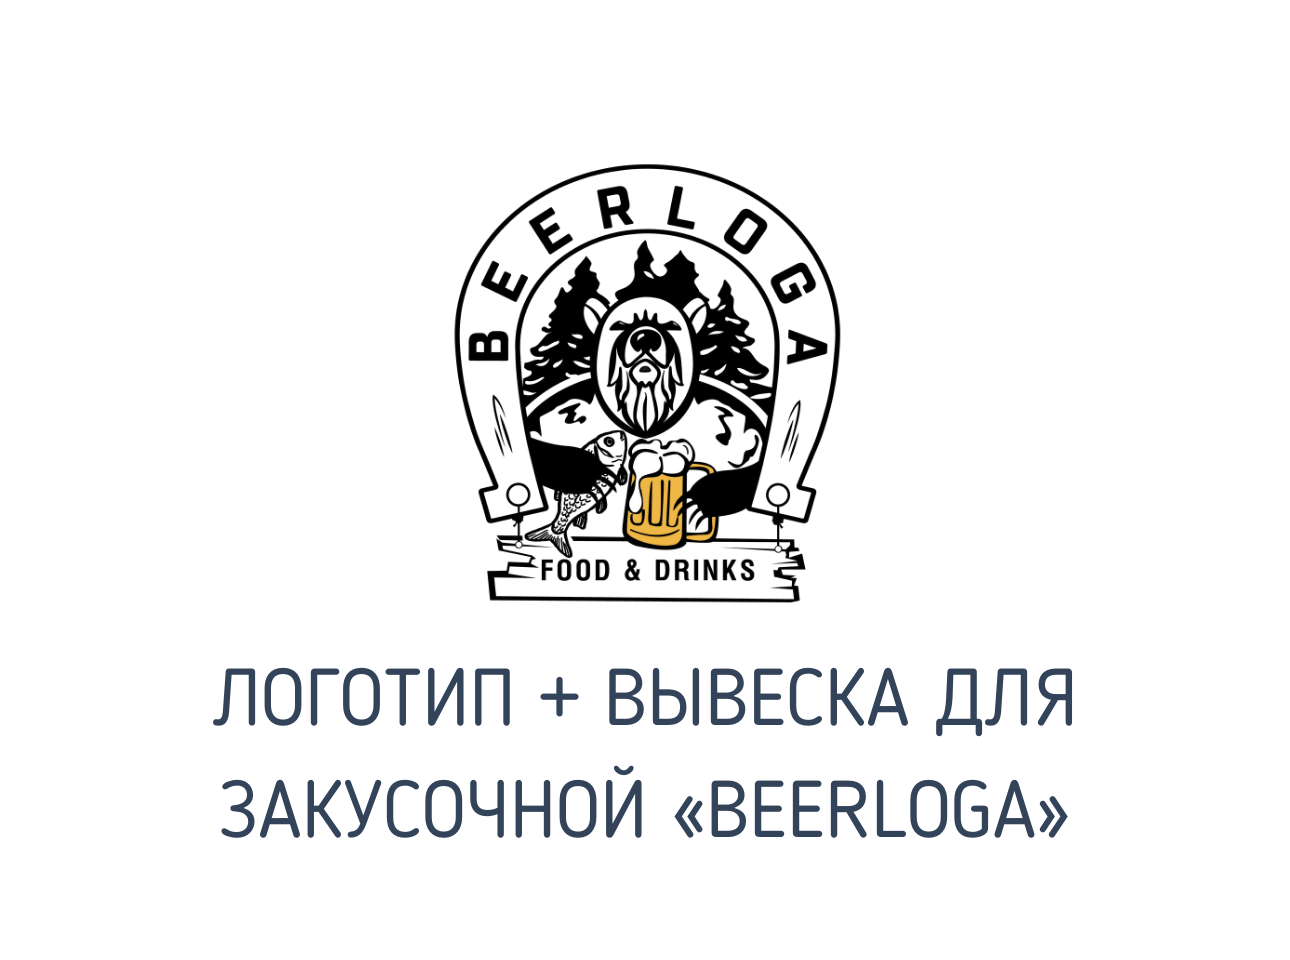 Логотип + вывеска для закусочной «BEERLOGA» 